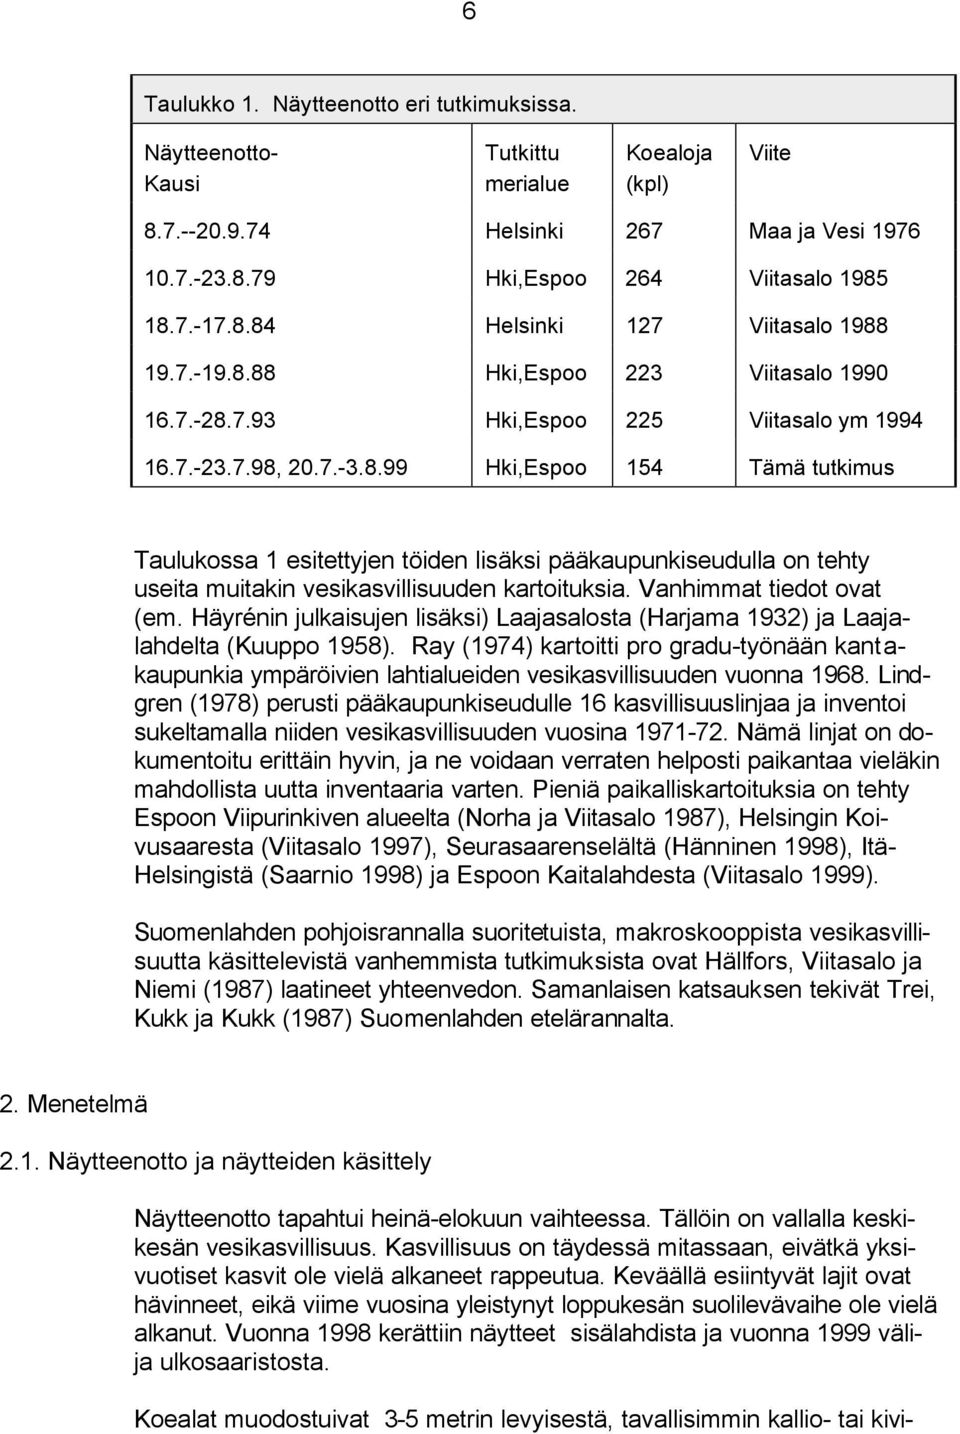 Vanhimmat tiedot ovat (em. Häyrénin julkaisujen lisäksi) Laajasalosta (Harjama 1932) ja Laajalahdelta (Kuuppo 1958).